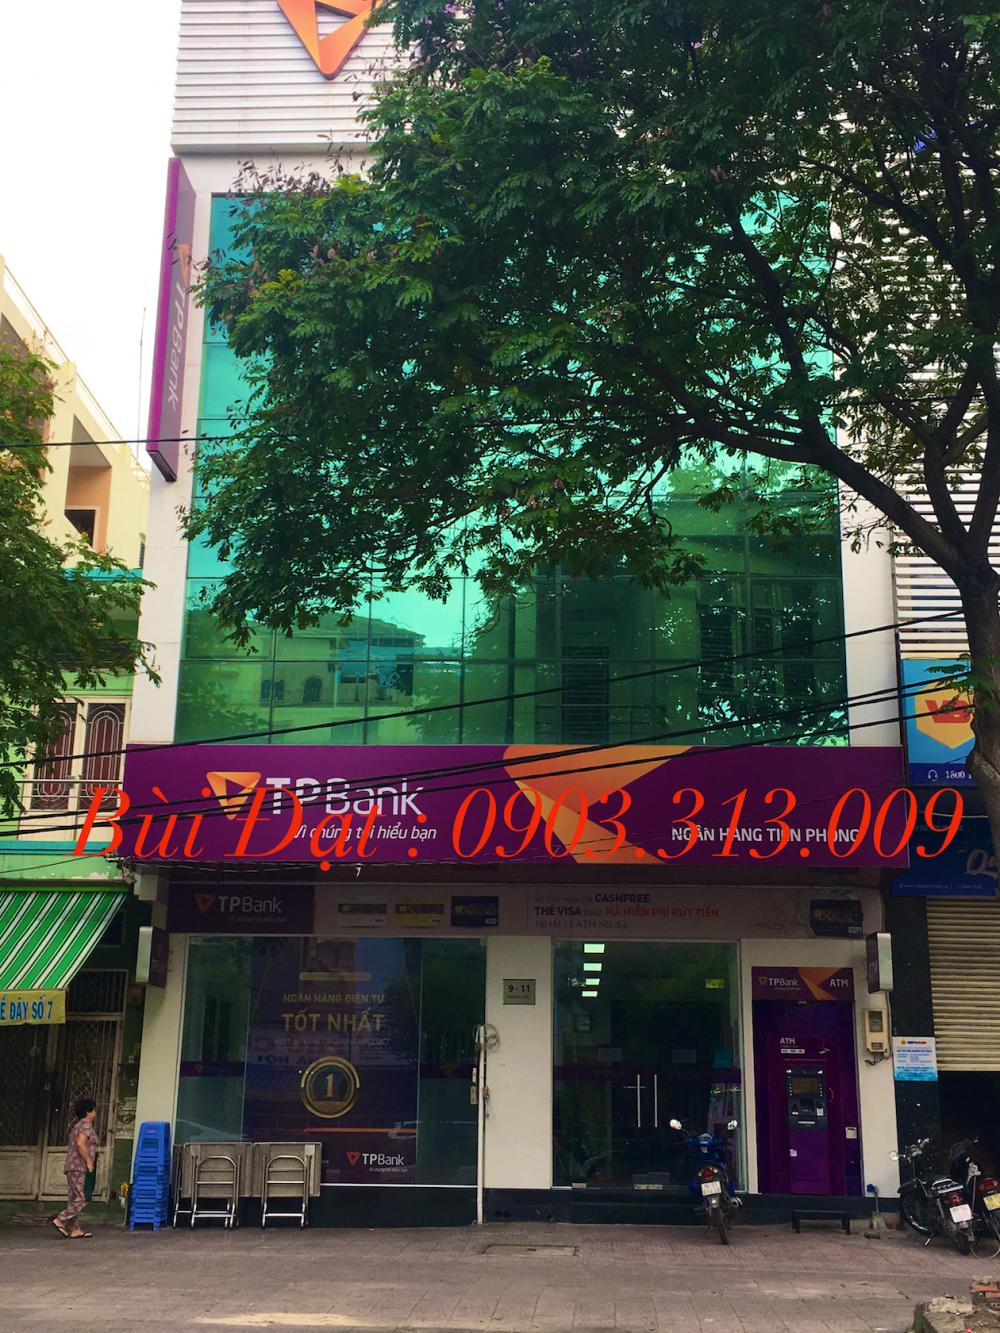 Bán nhà mặt tiền Trần Khắc Chân, Quận 1, DT : 8x24, đoạn gần Trần Quang Khải, với giá chỉ 52 tỉ